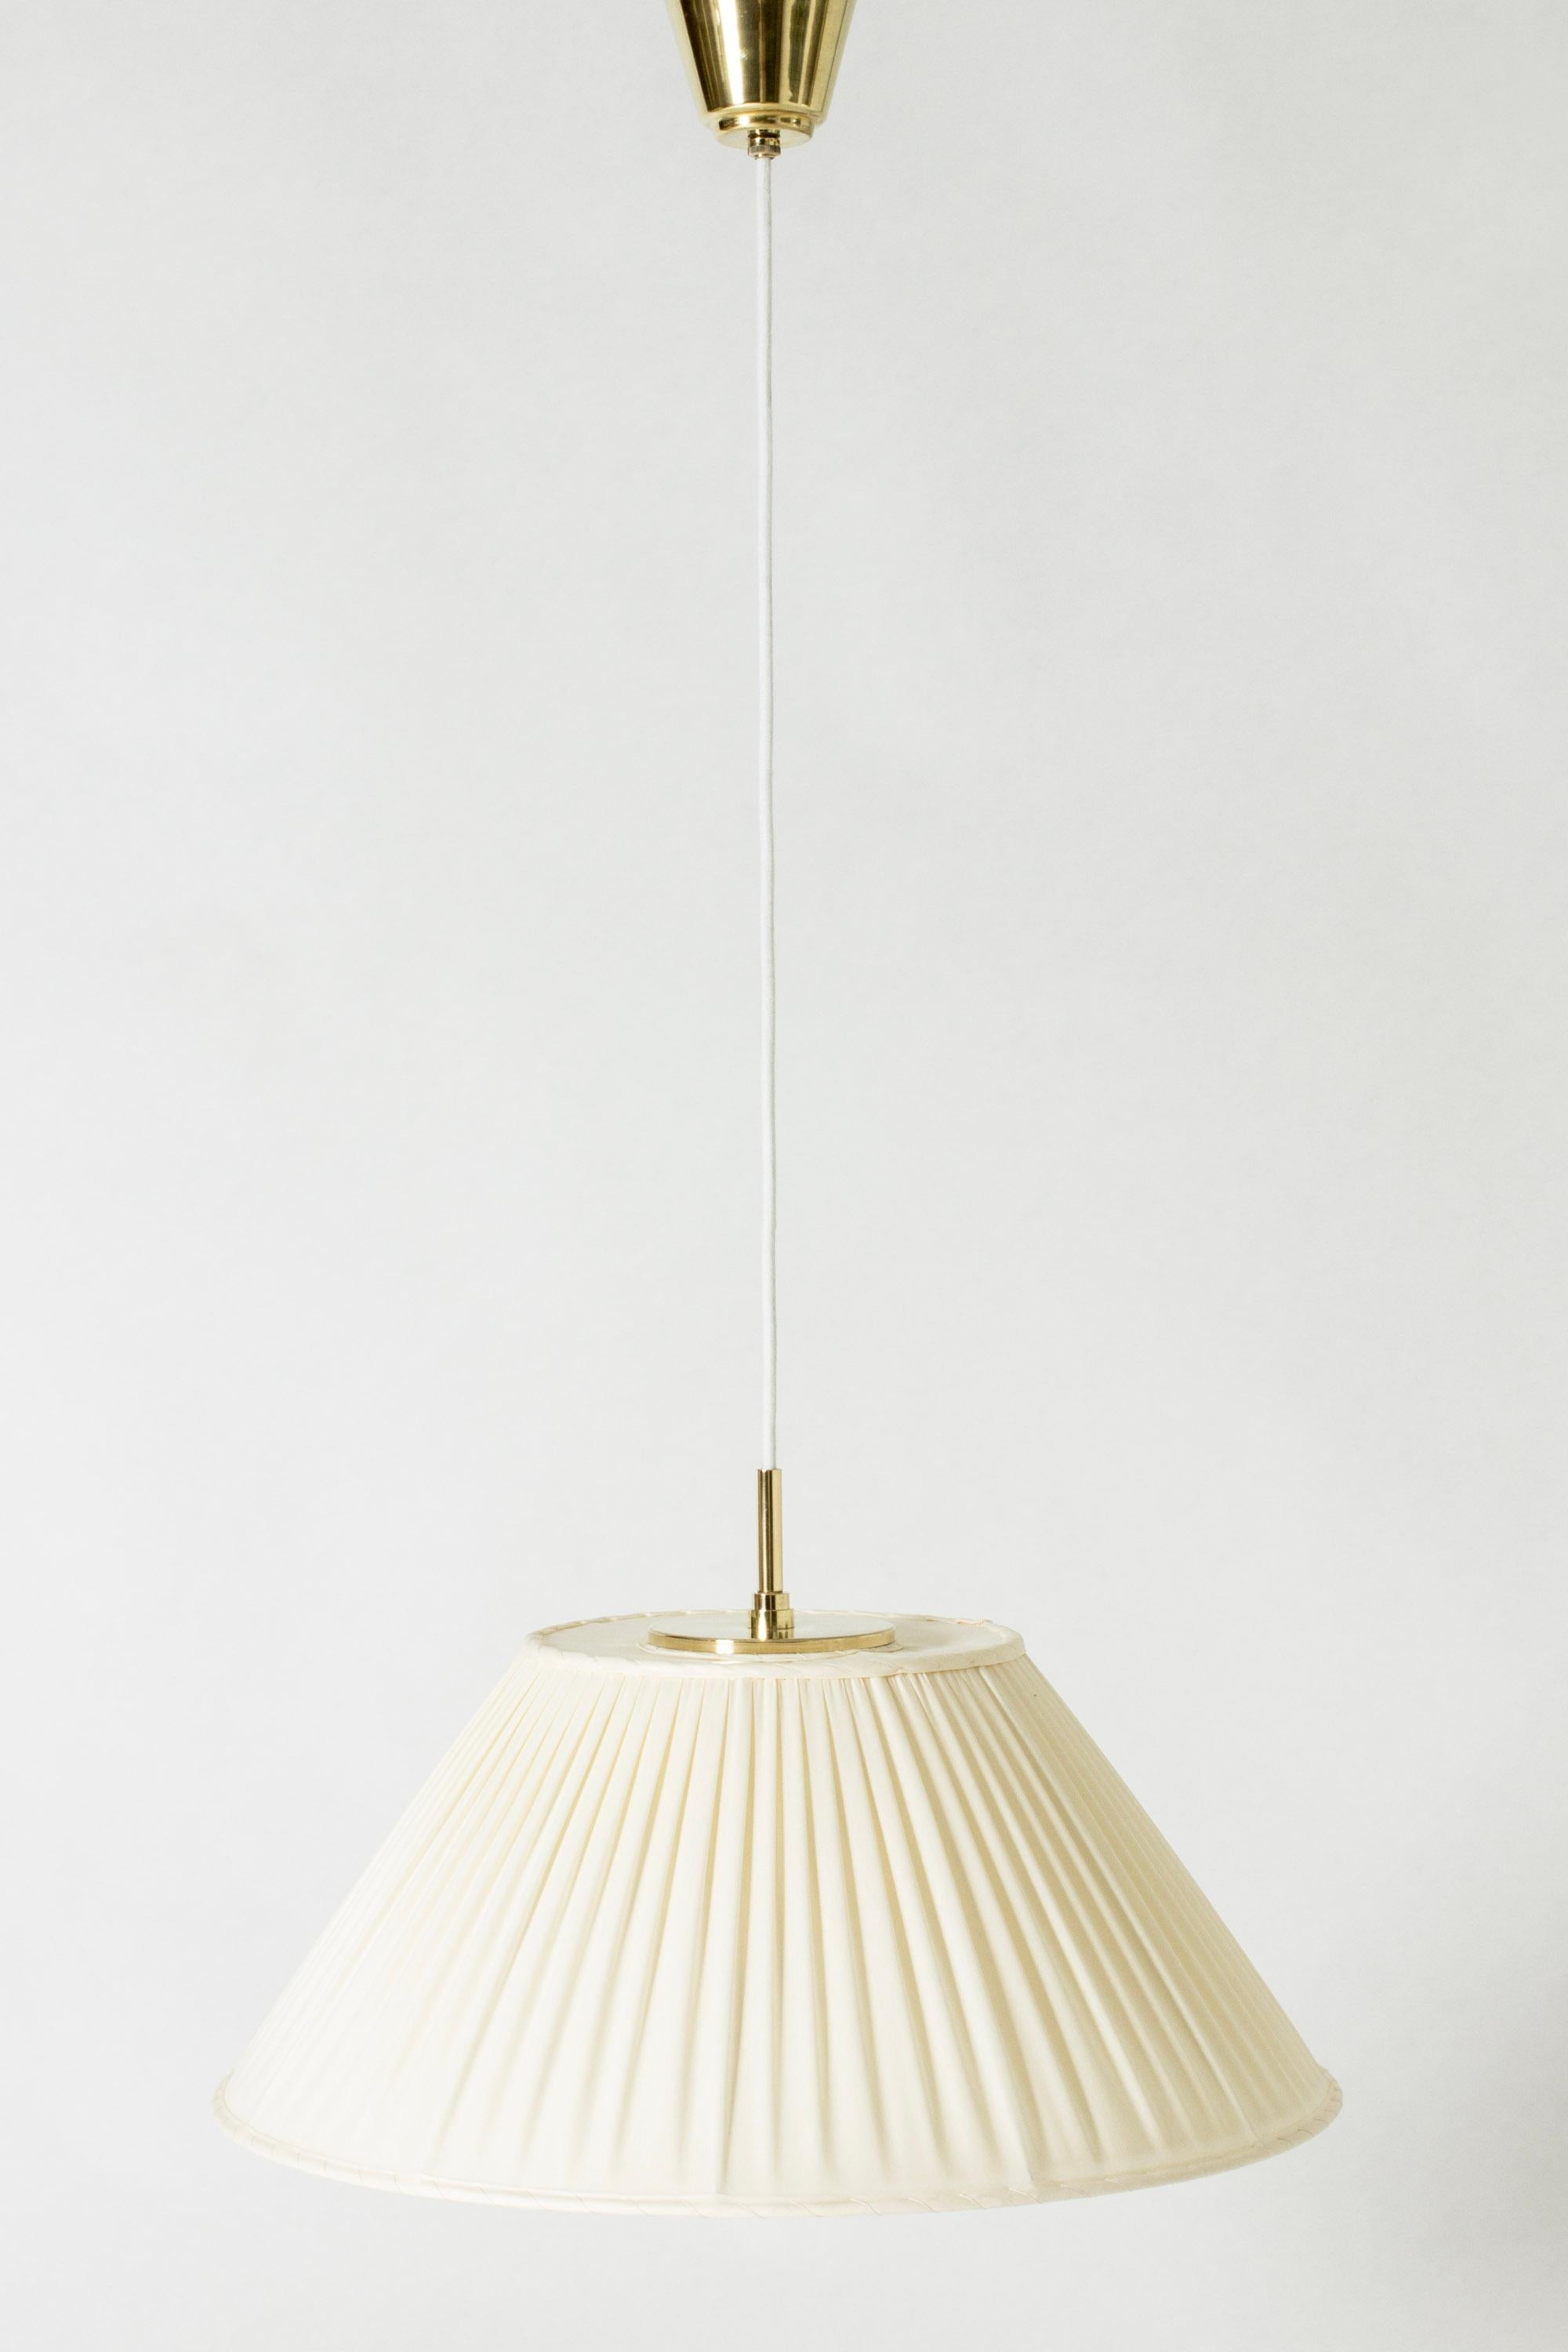 Mid-20th Century Midcentury Modern Pendant Light by Josef Frank, Svenskt Tenn, Sweden, 1950s For Sale